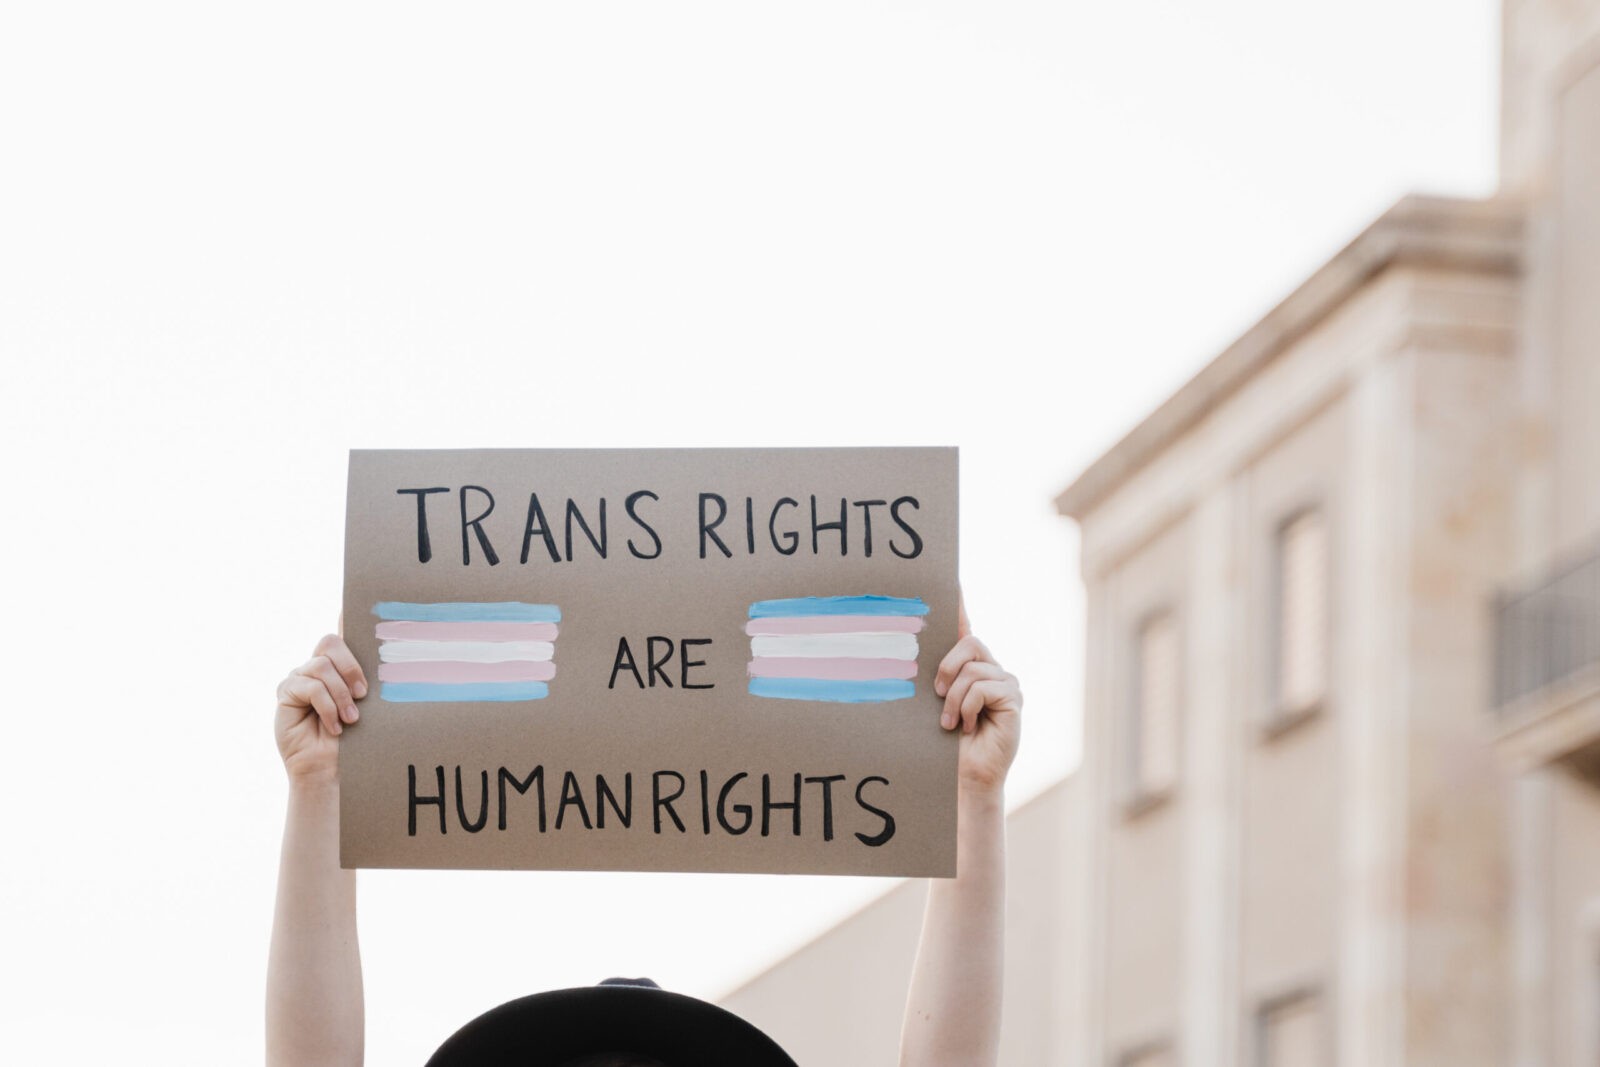 Trans woman at gay pride protest holding transgender flag banner - Lgbt celebration event concept